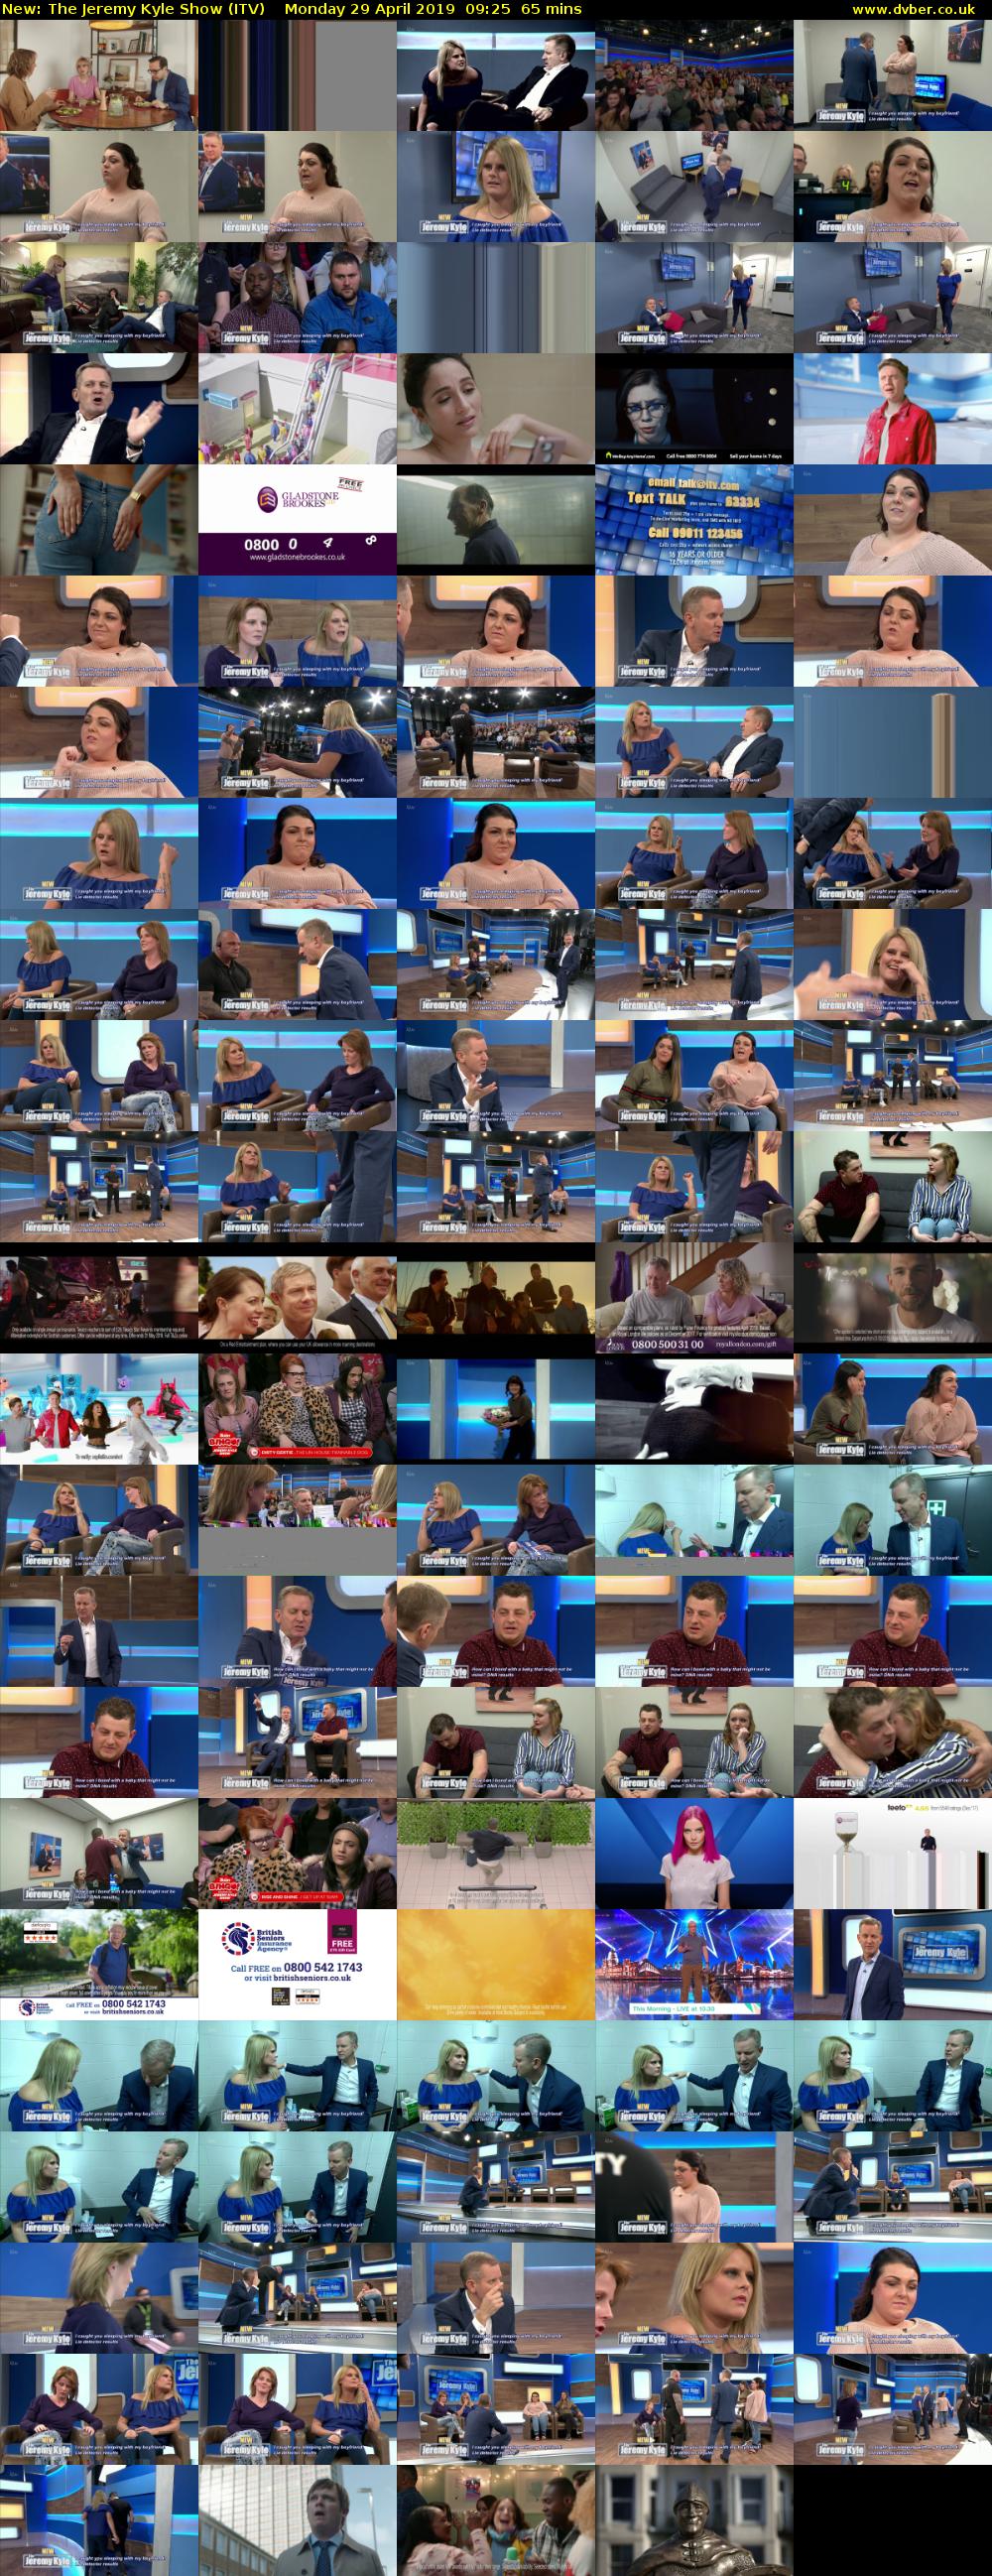 The Jeremy Kyle Show (ITV) Monday 29 April 2019 09:25 - 10:30